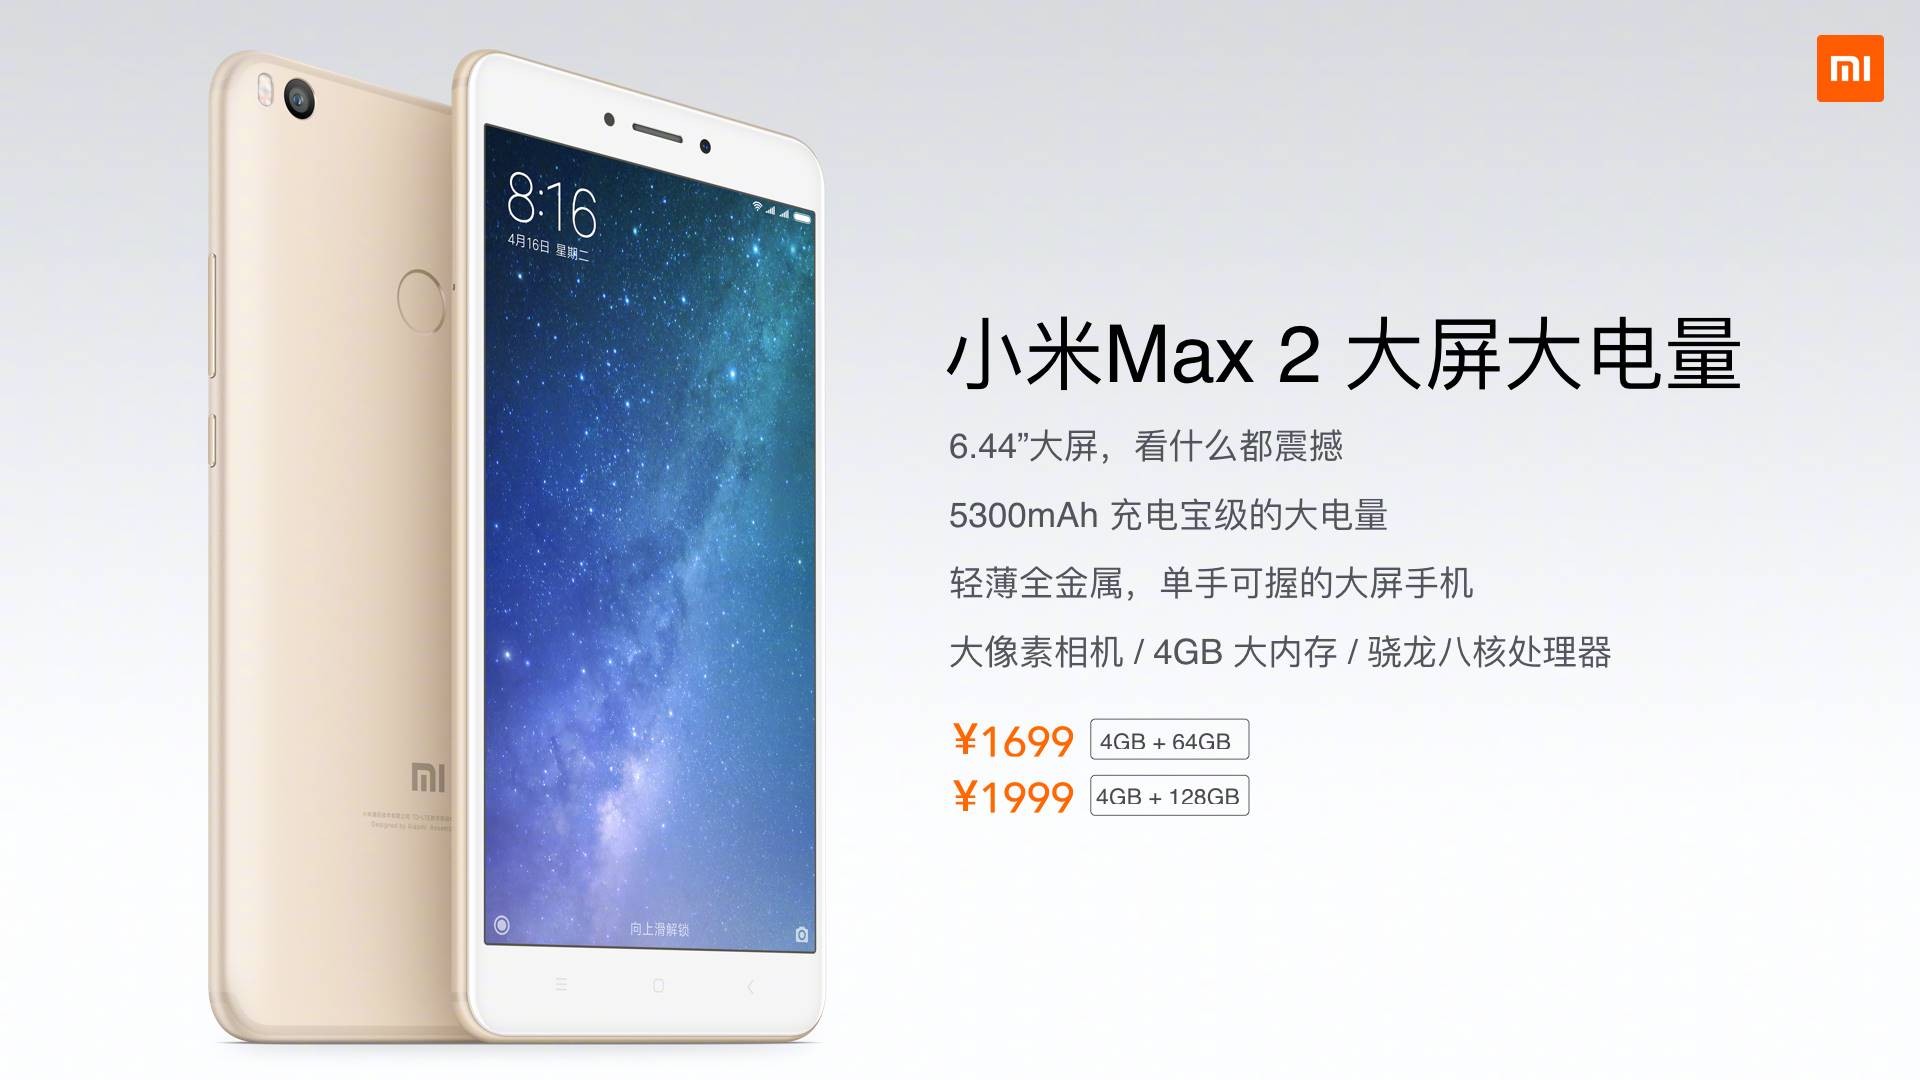 Precio de Xiaomi Mi Max 2 confirmado en 1699 y 1999 Yuan para la variante de 64 GB y 128 GB